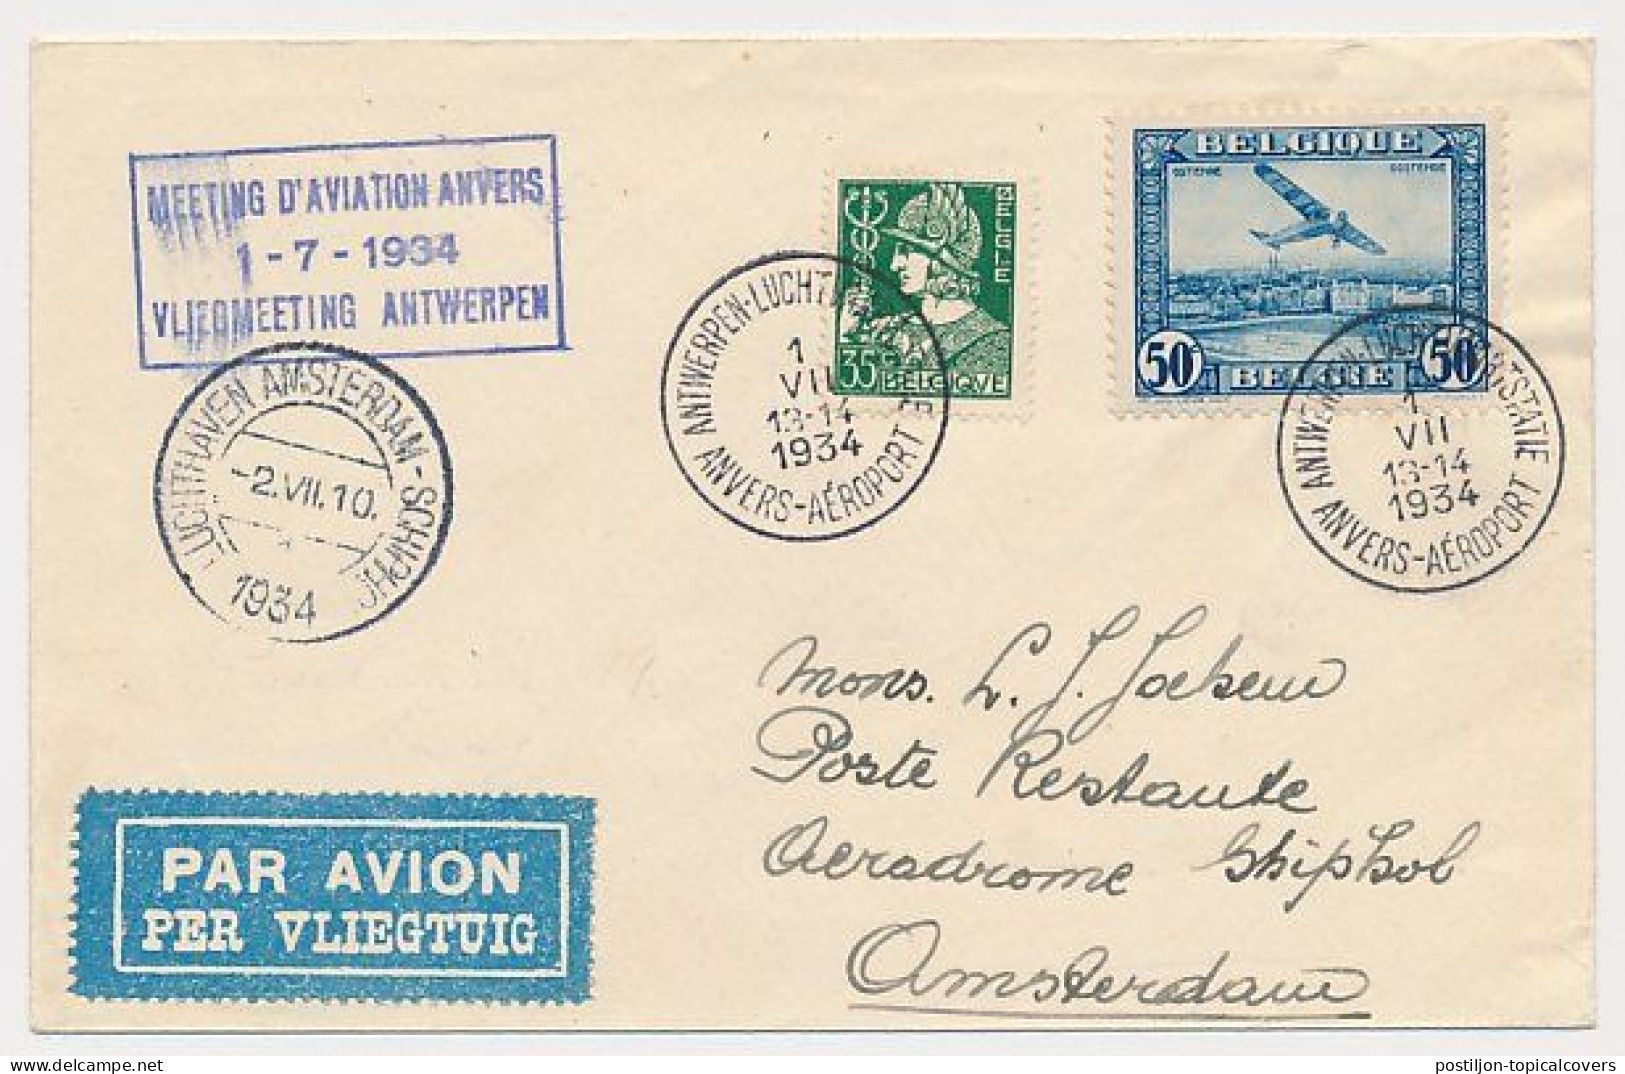 Airmail Cover / Postmark  Luchtvaartstatie Antwerpen Belgium - Amsterdam The Netherlands 1934 - Covers & Documents